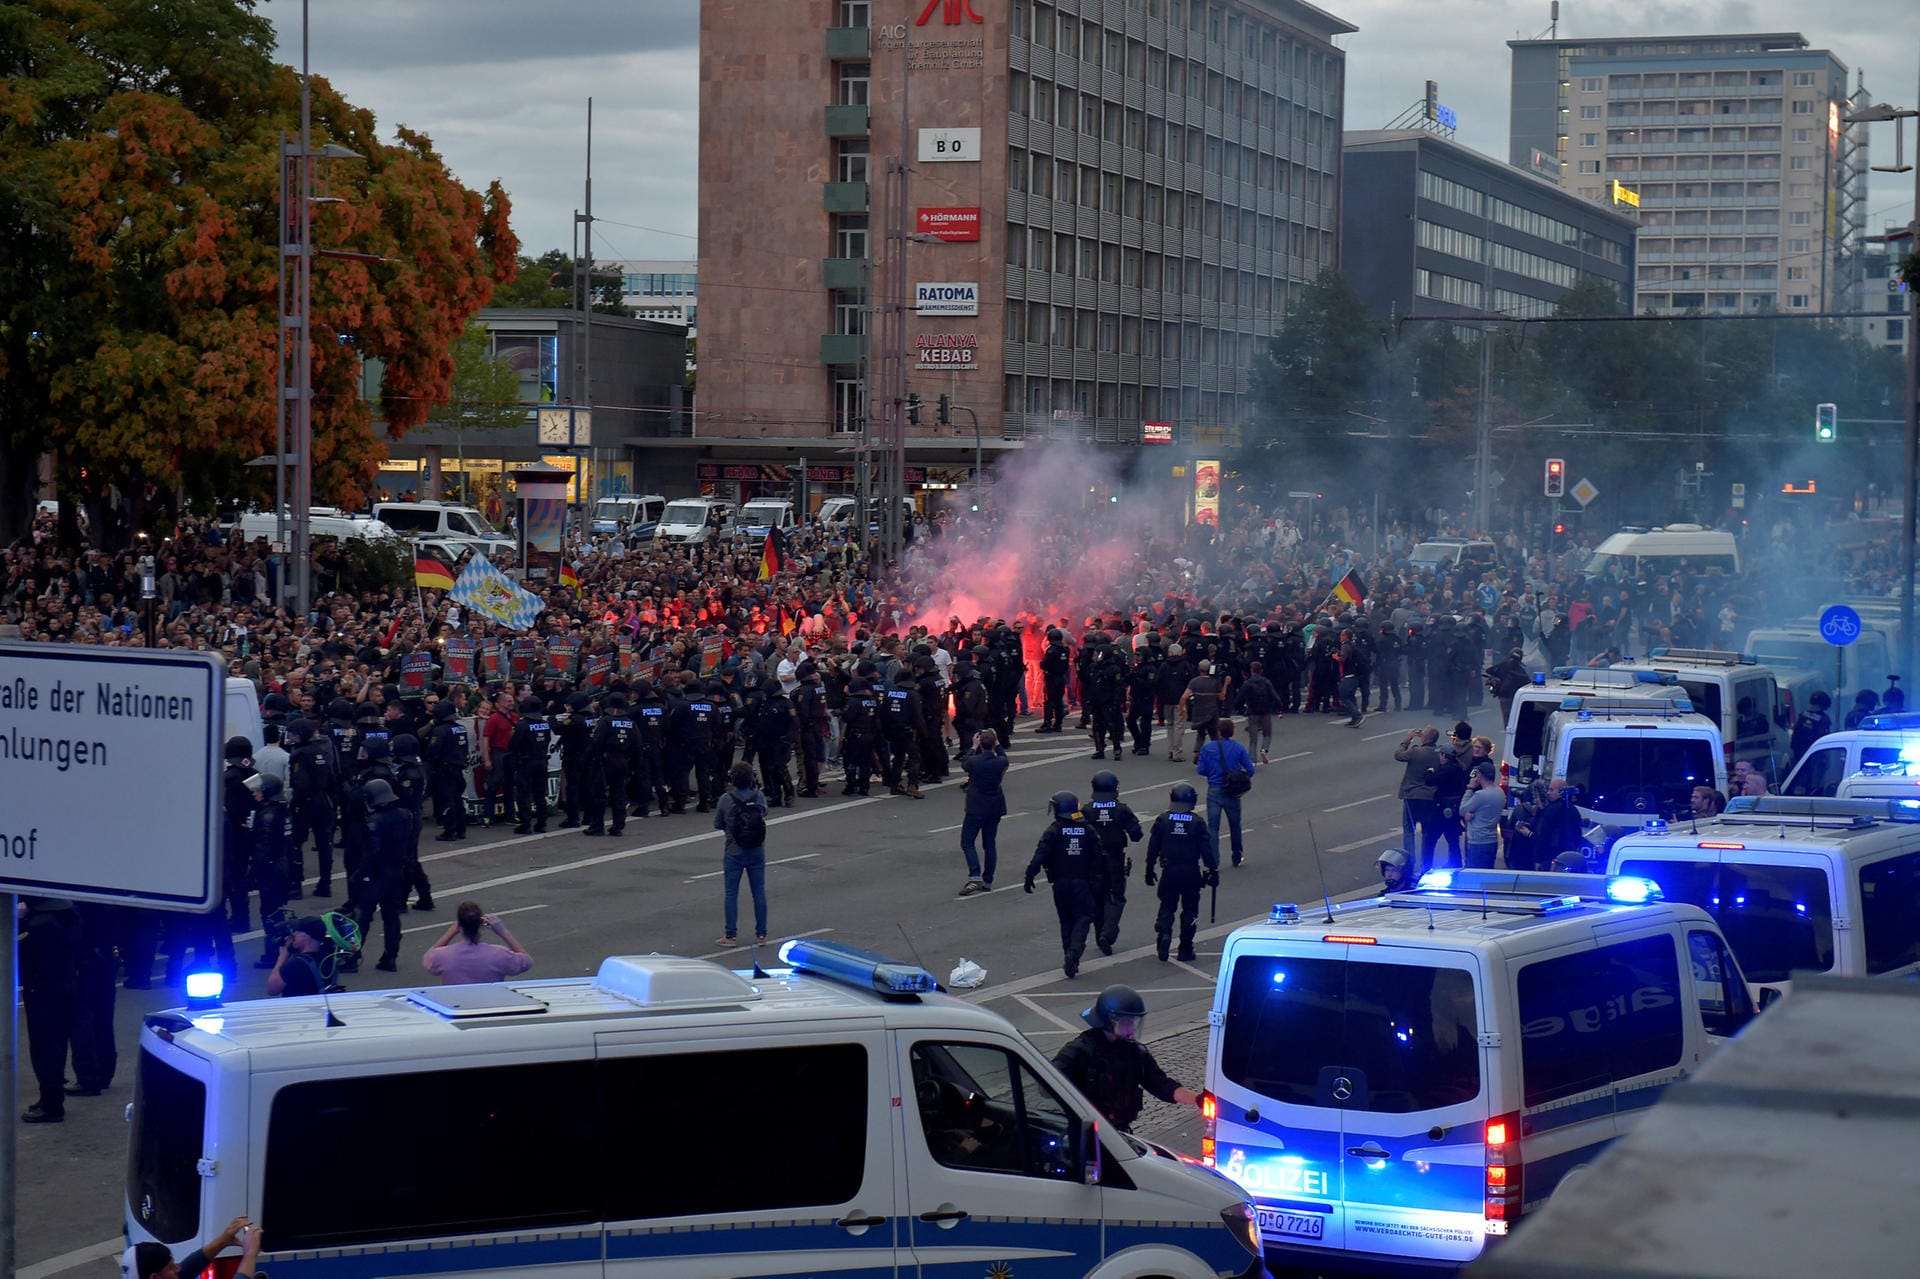 Zur Schwere der Verletzungen lagen der Polizeidirektion Chemnitz zunächst keine Angaben vor. Es seien Feuerwerkskörper und Gegenstände geworfen worden, hieß es. Teilnehmer berichteten von einer aggressiven Stimmung.